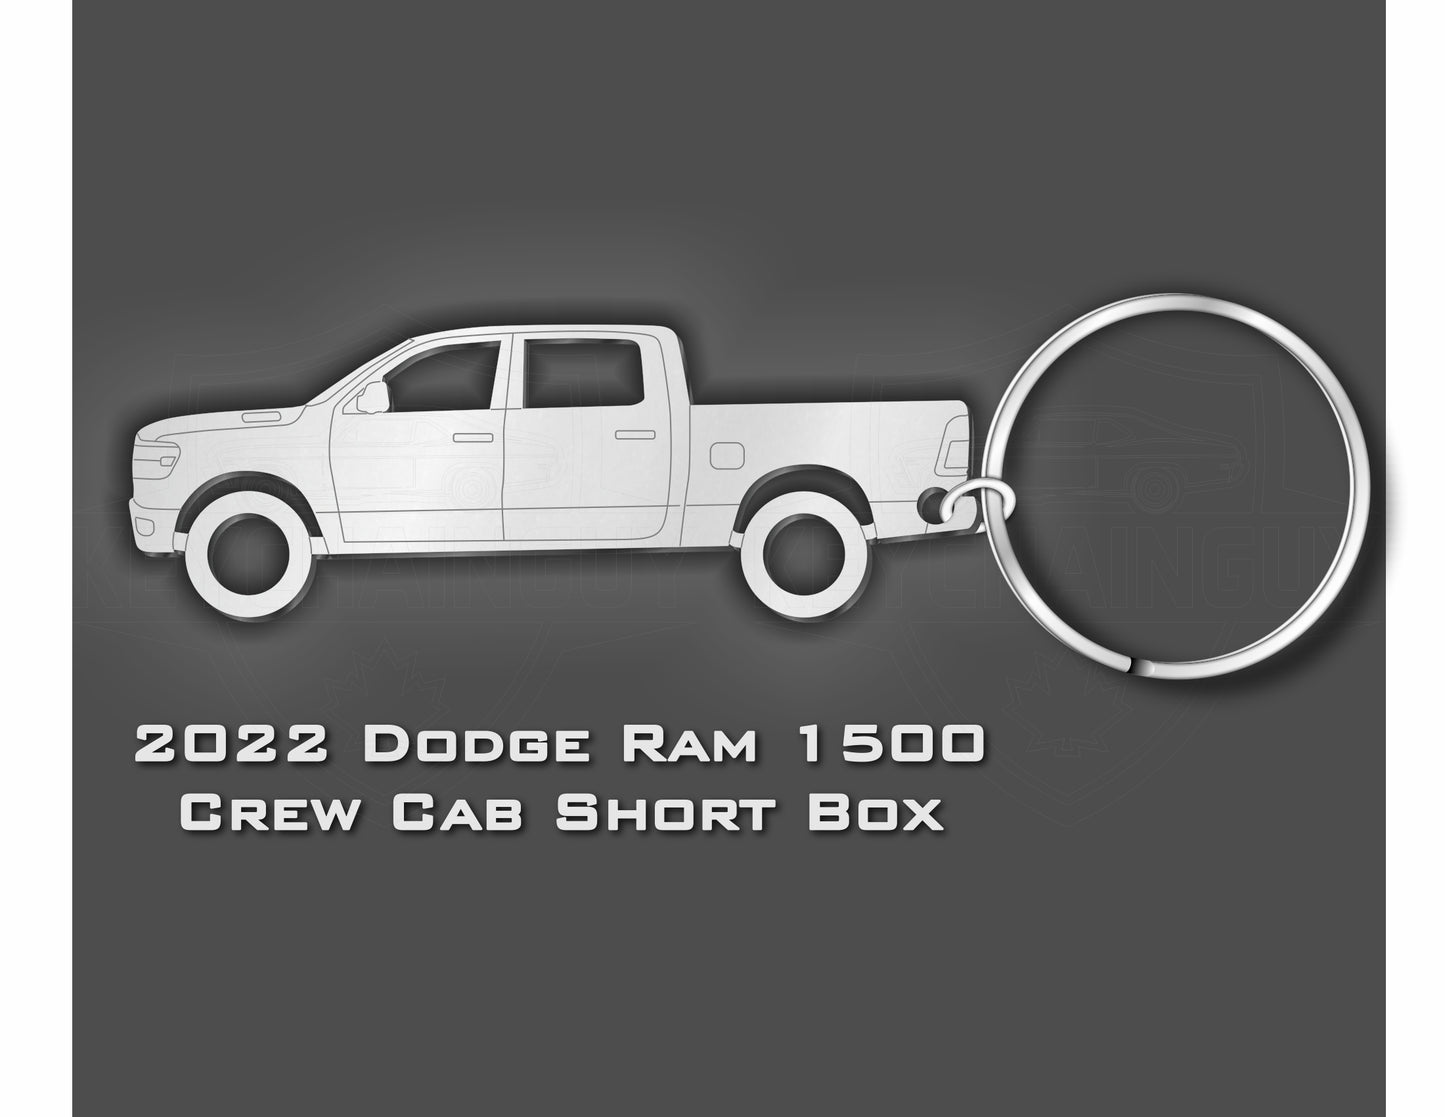 2018 - 2022 Dodge Ram 1500 Truck (Gen 5)